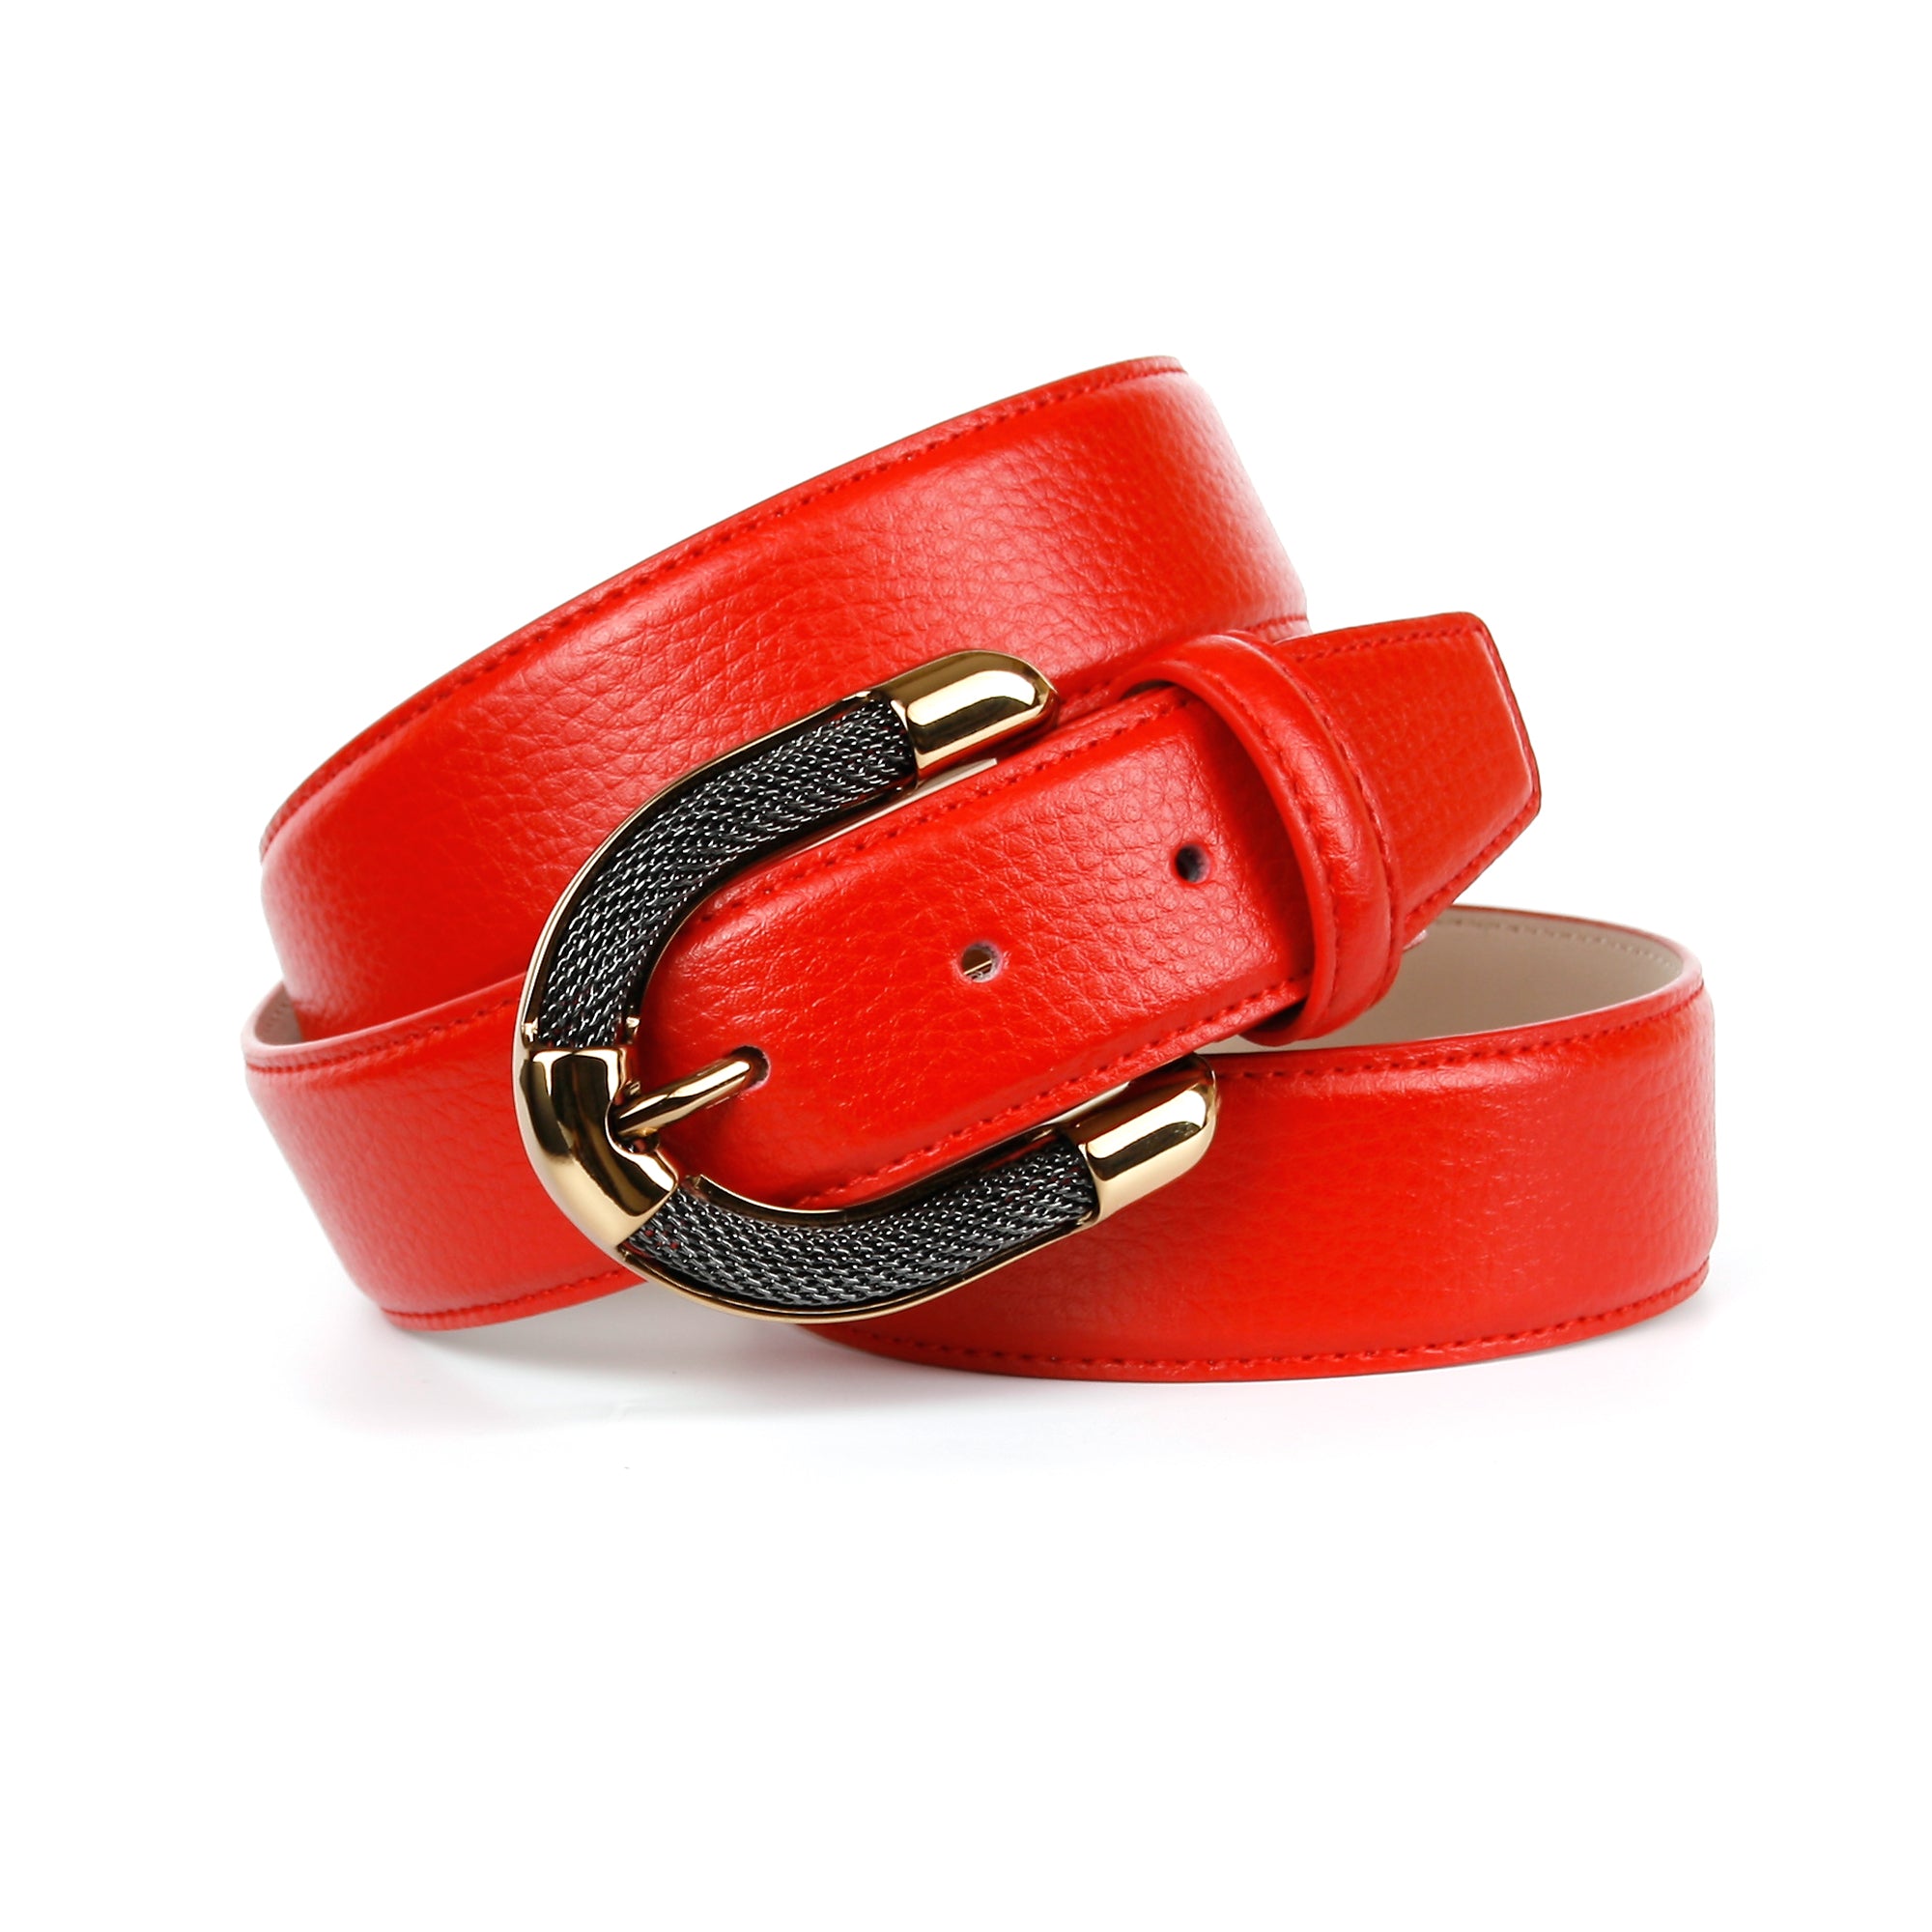 Femininer Ledergürtel in Rot mit anthonicrown Schmuck-Schließe aufwendiger –